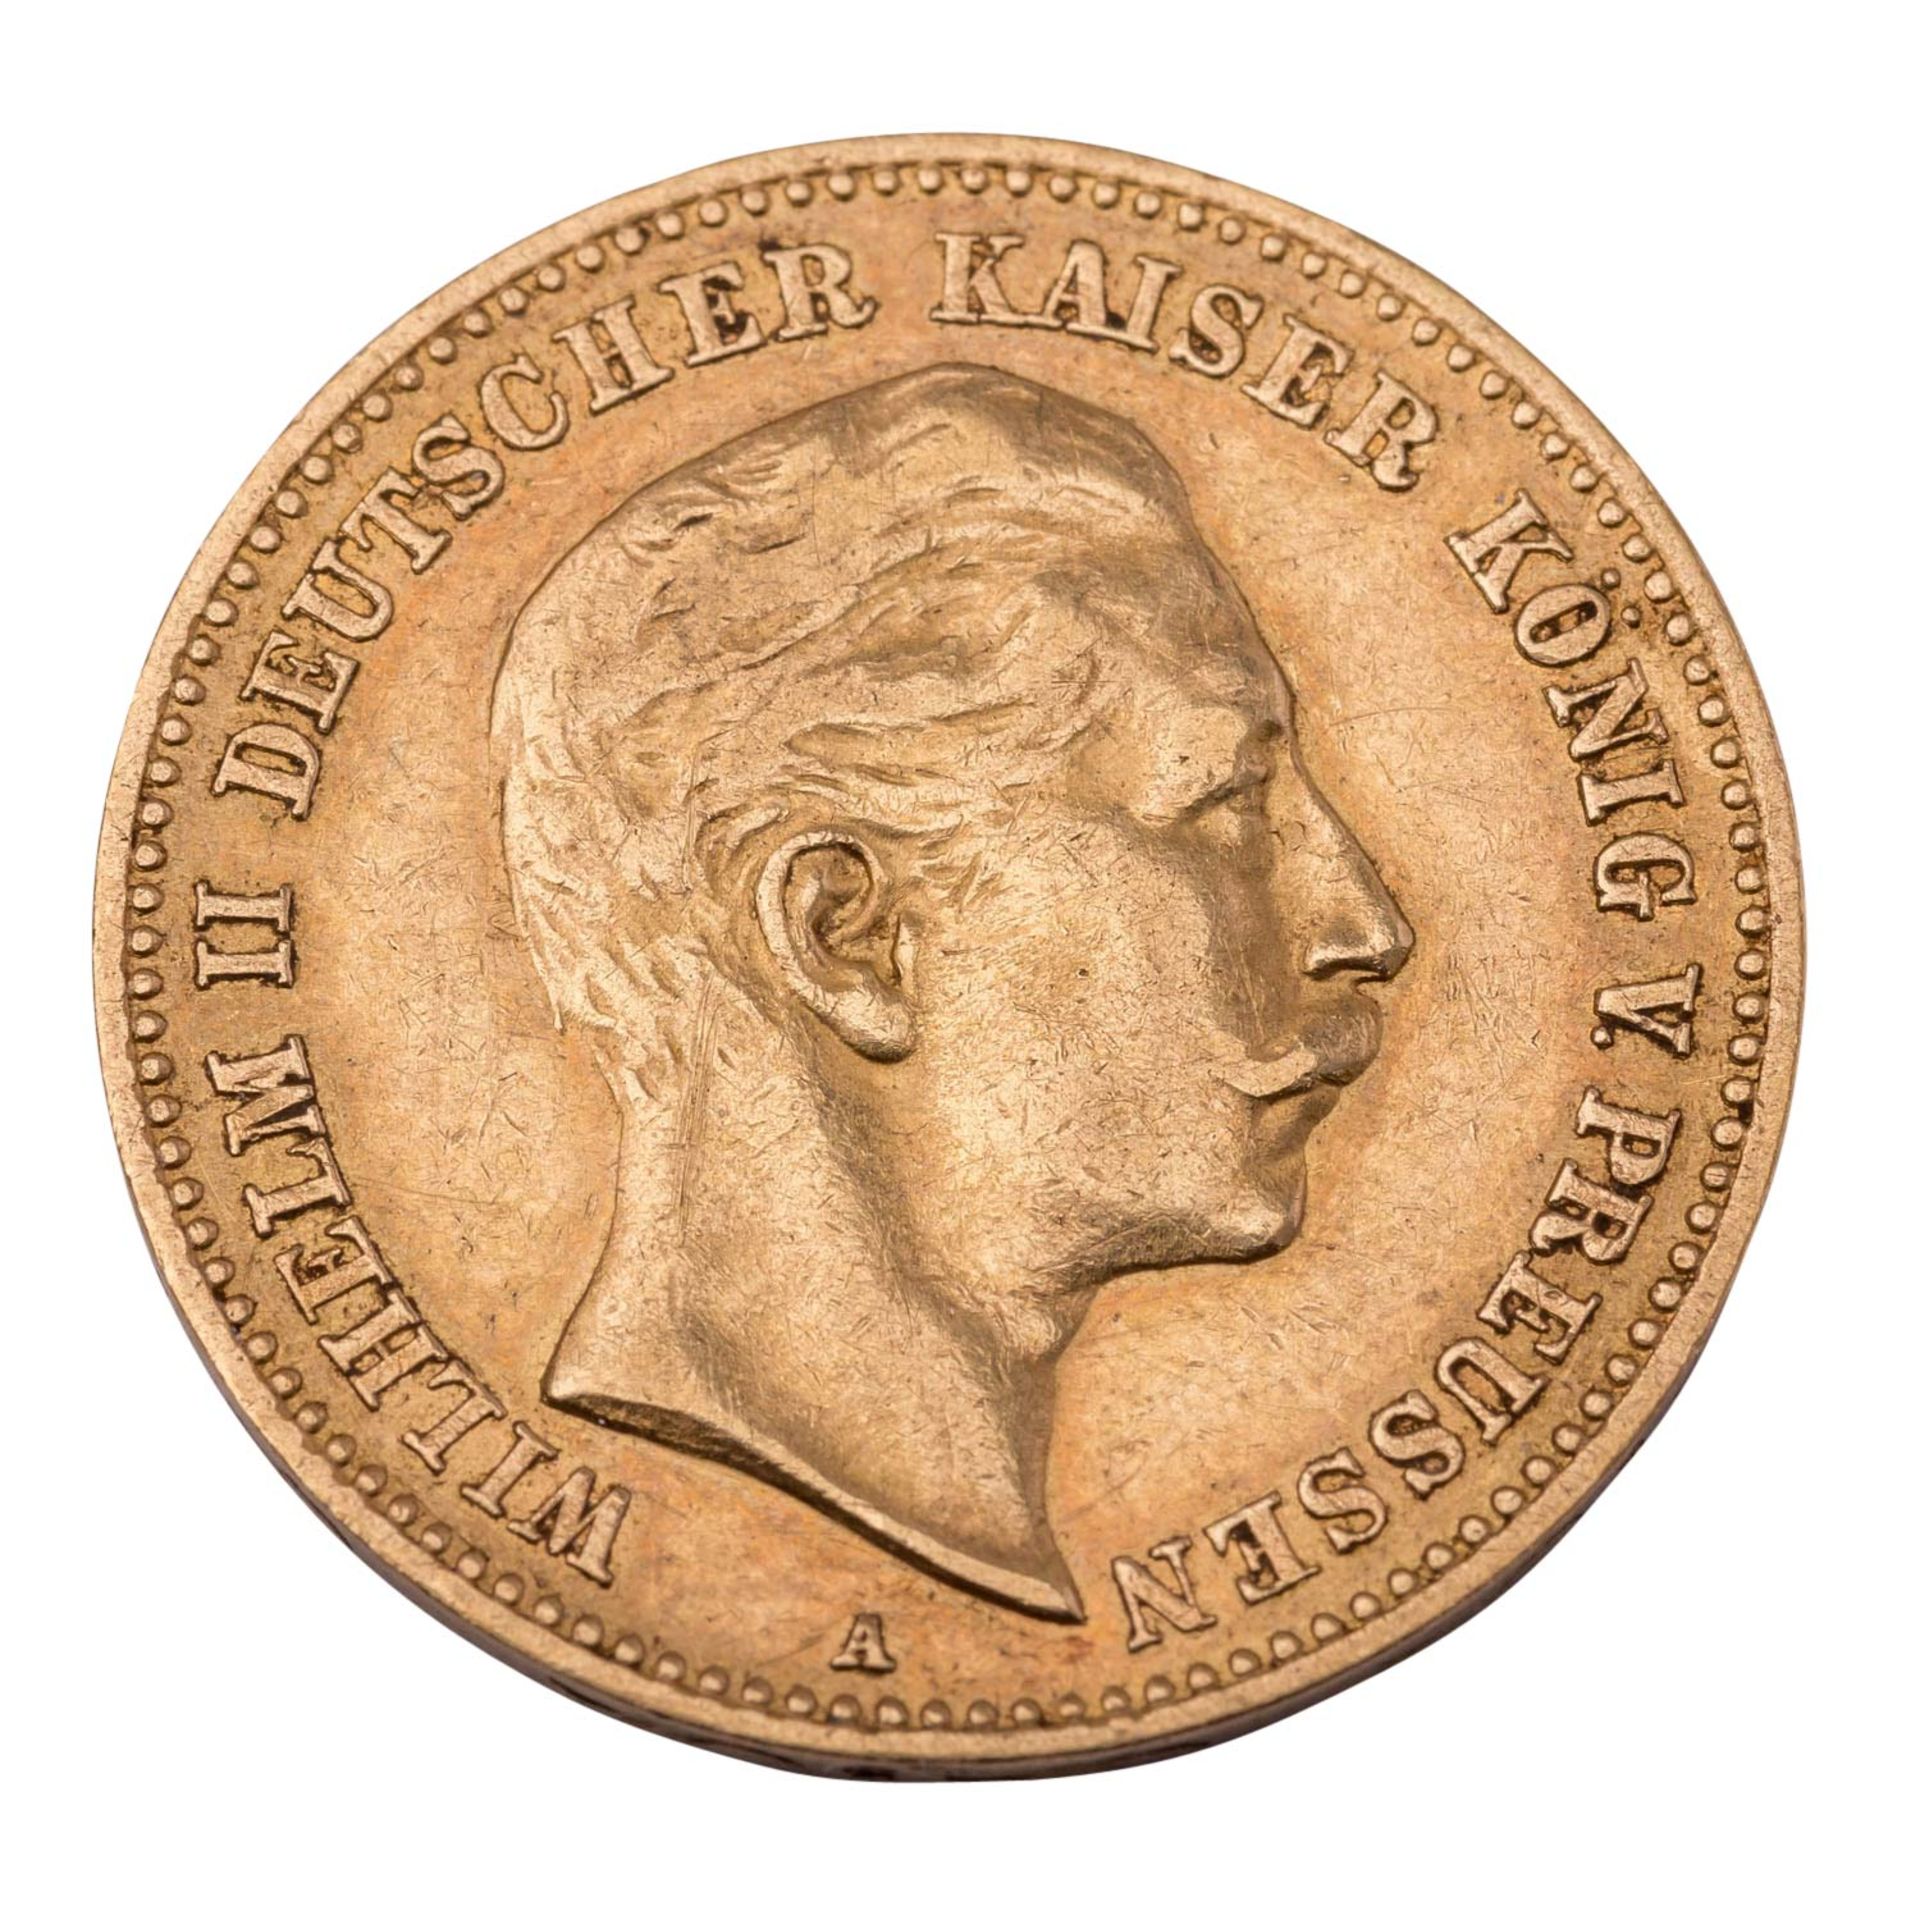 Deutsches Kaiserreich / Preussen - 10 Mark 1903/A, GOLD, - Image 2 of 2